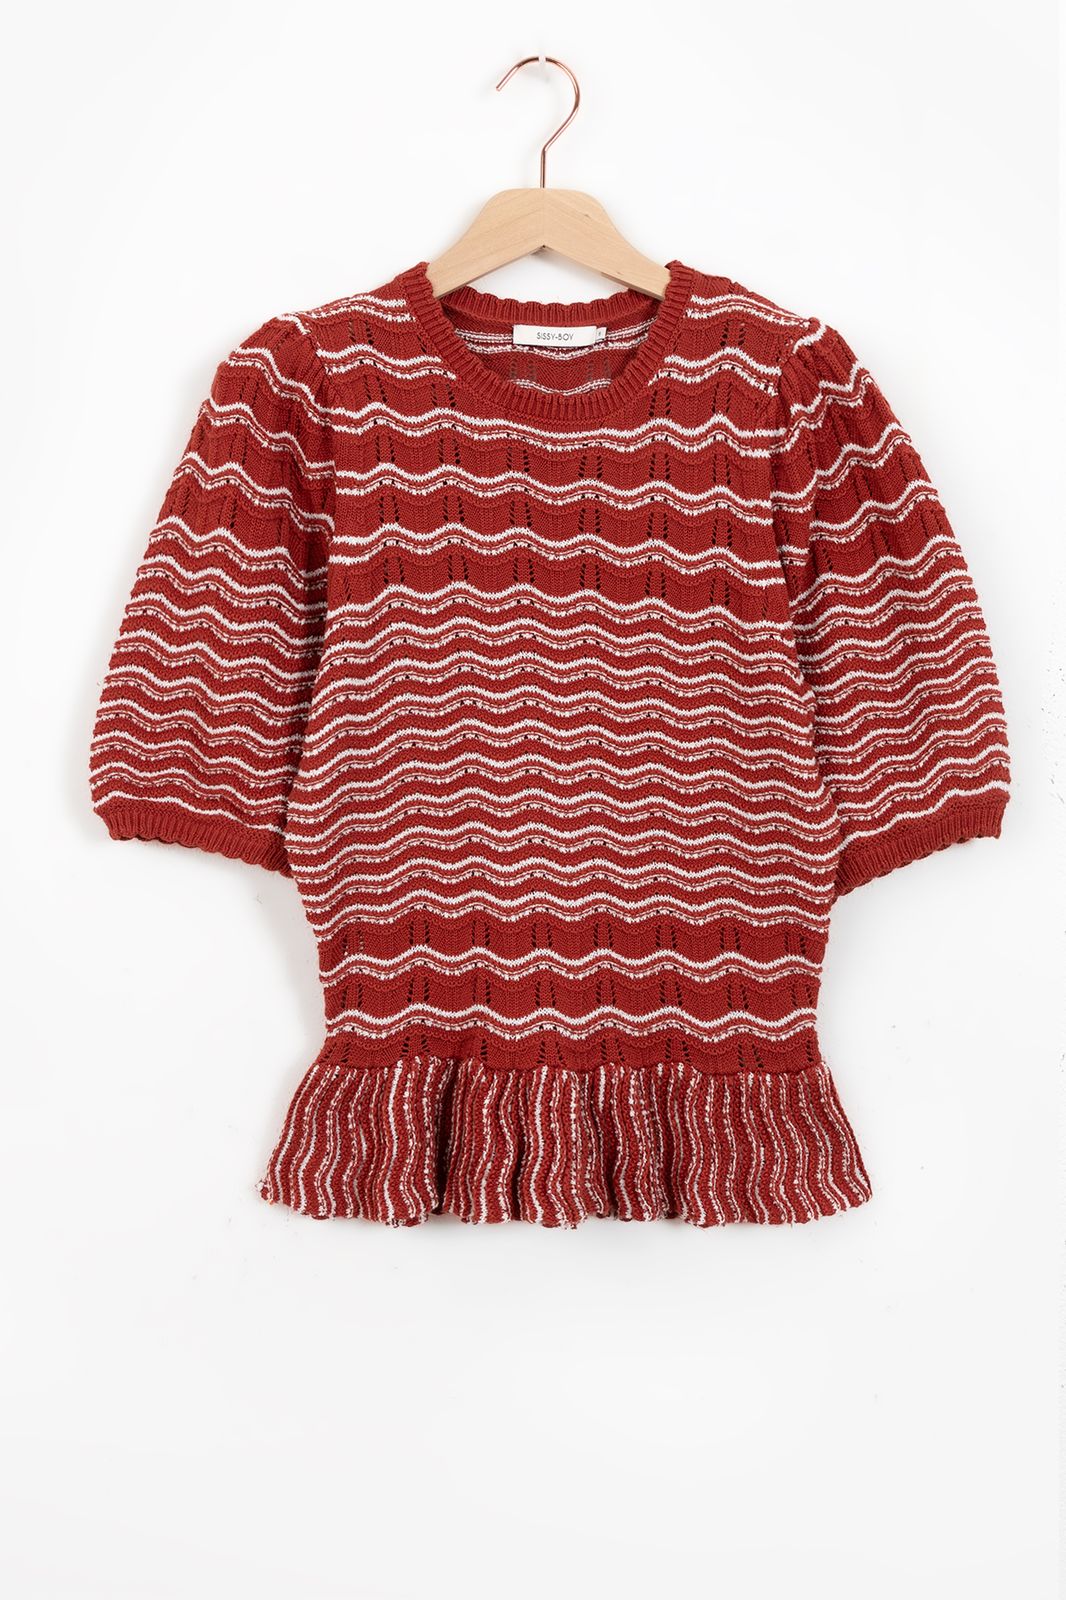 Top tricoté avec motif ondulé - rouge foncé